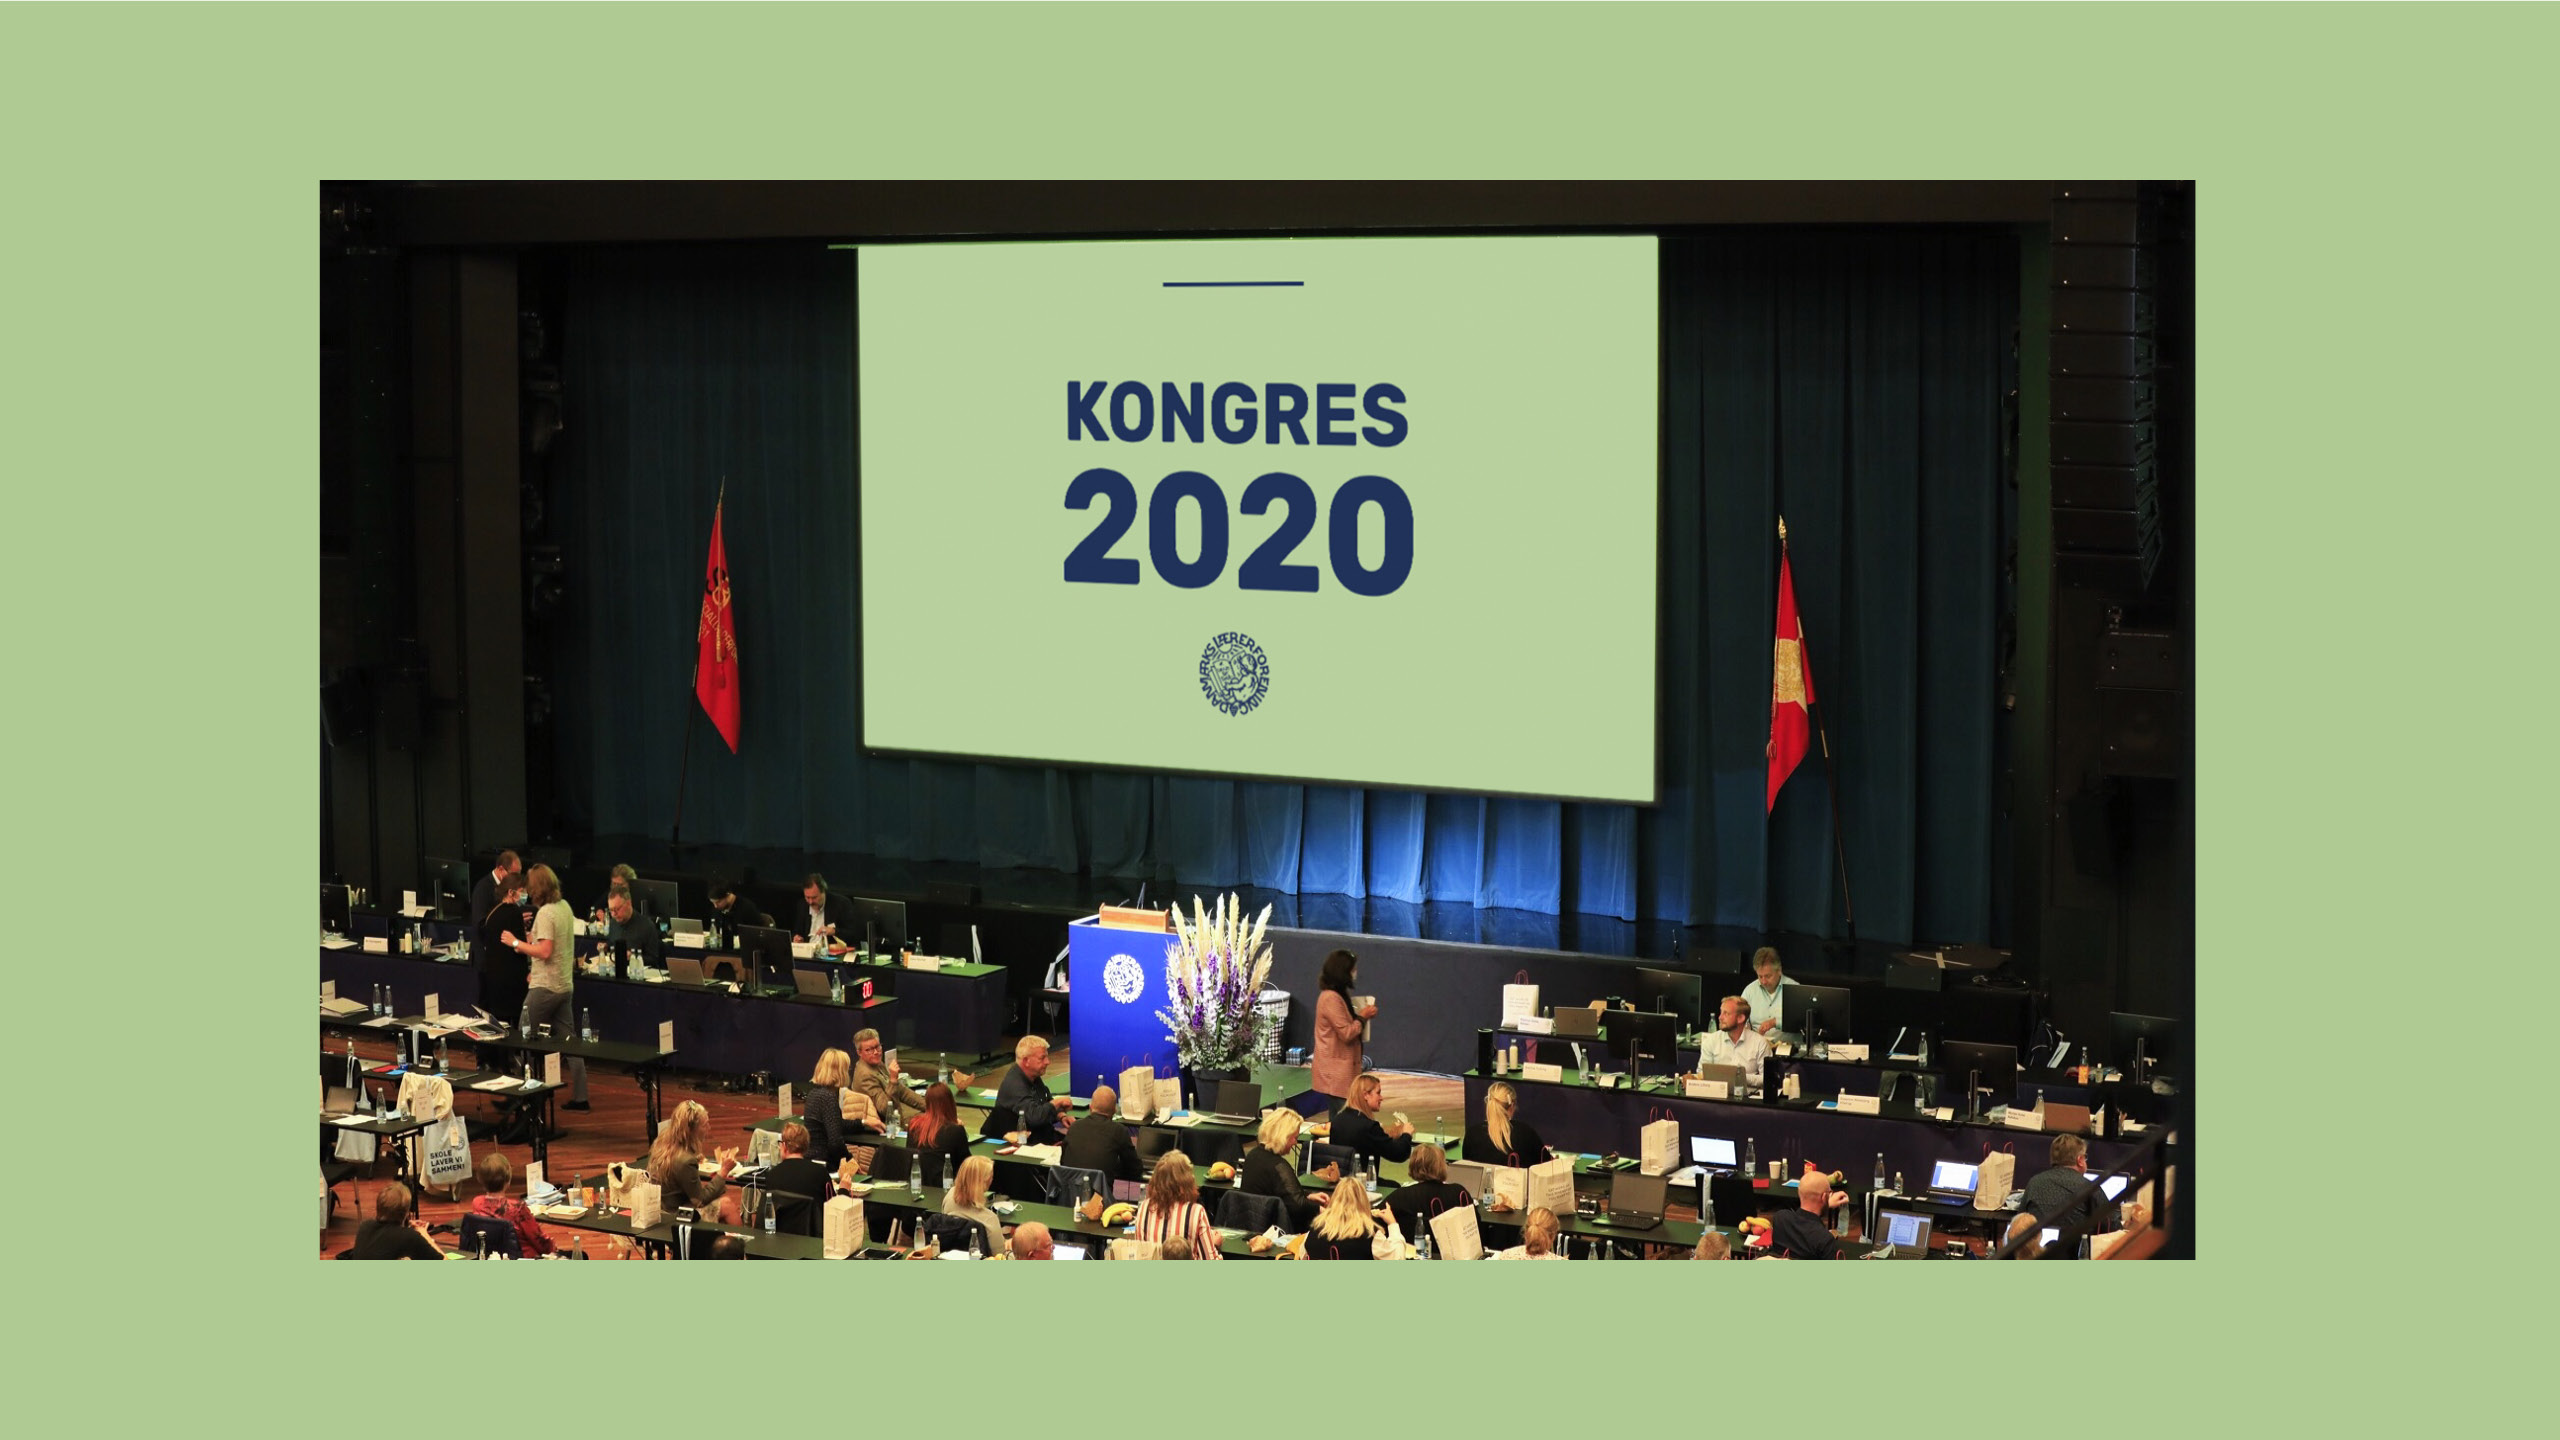 Danmarks Lærerforening Kongres 2020 salen med publikum